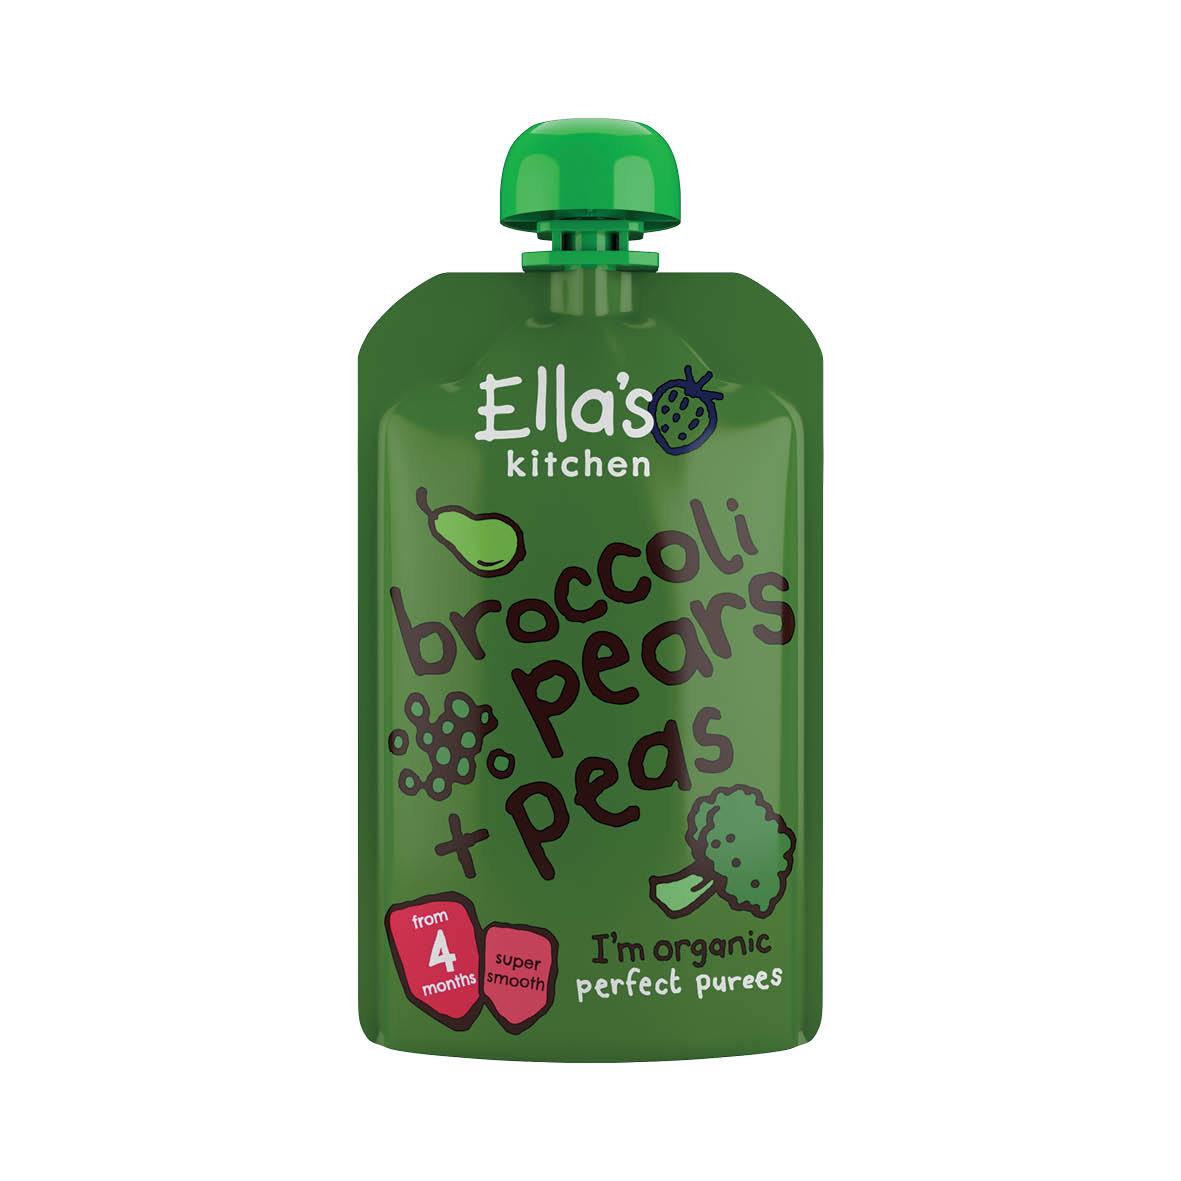 Ella's Kitchen broccoli, pears and peas